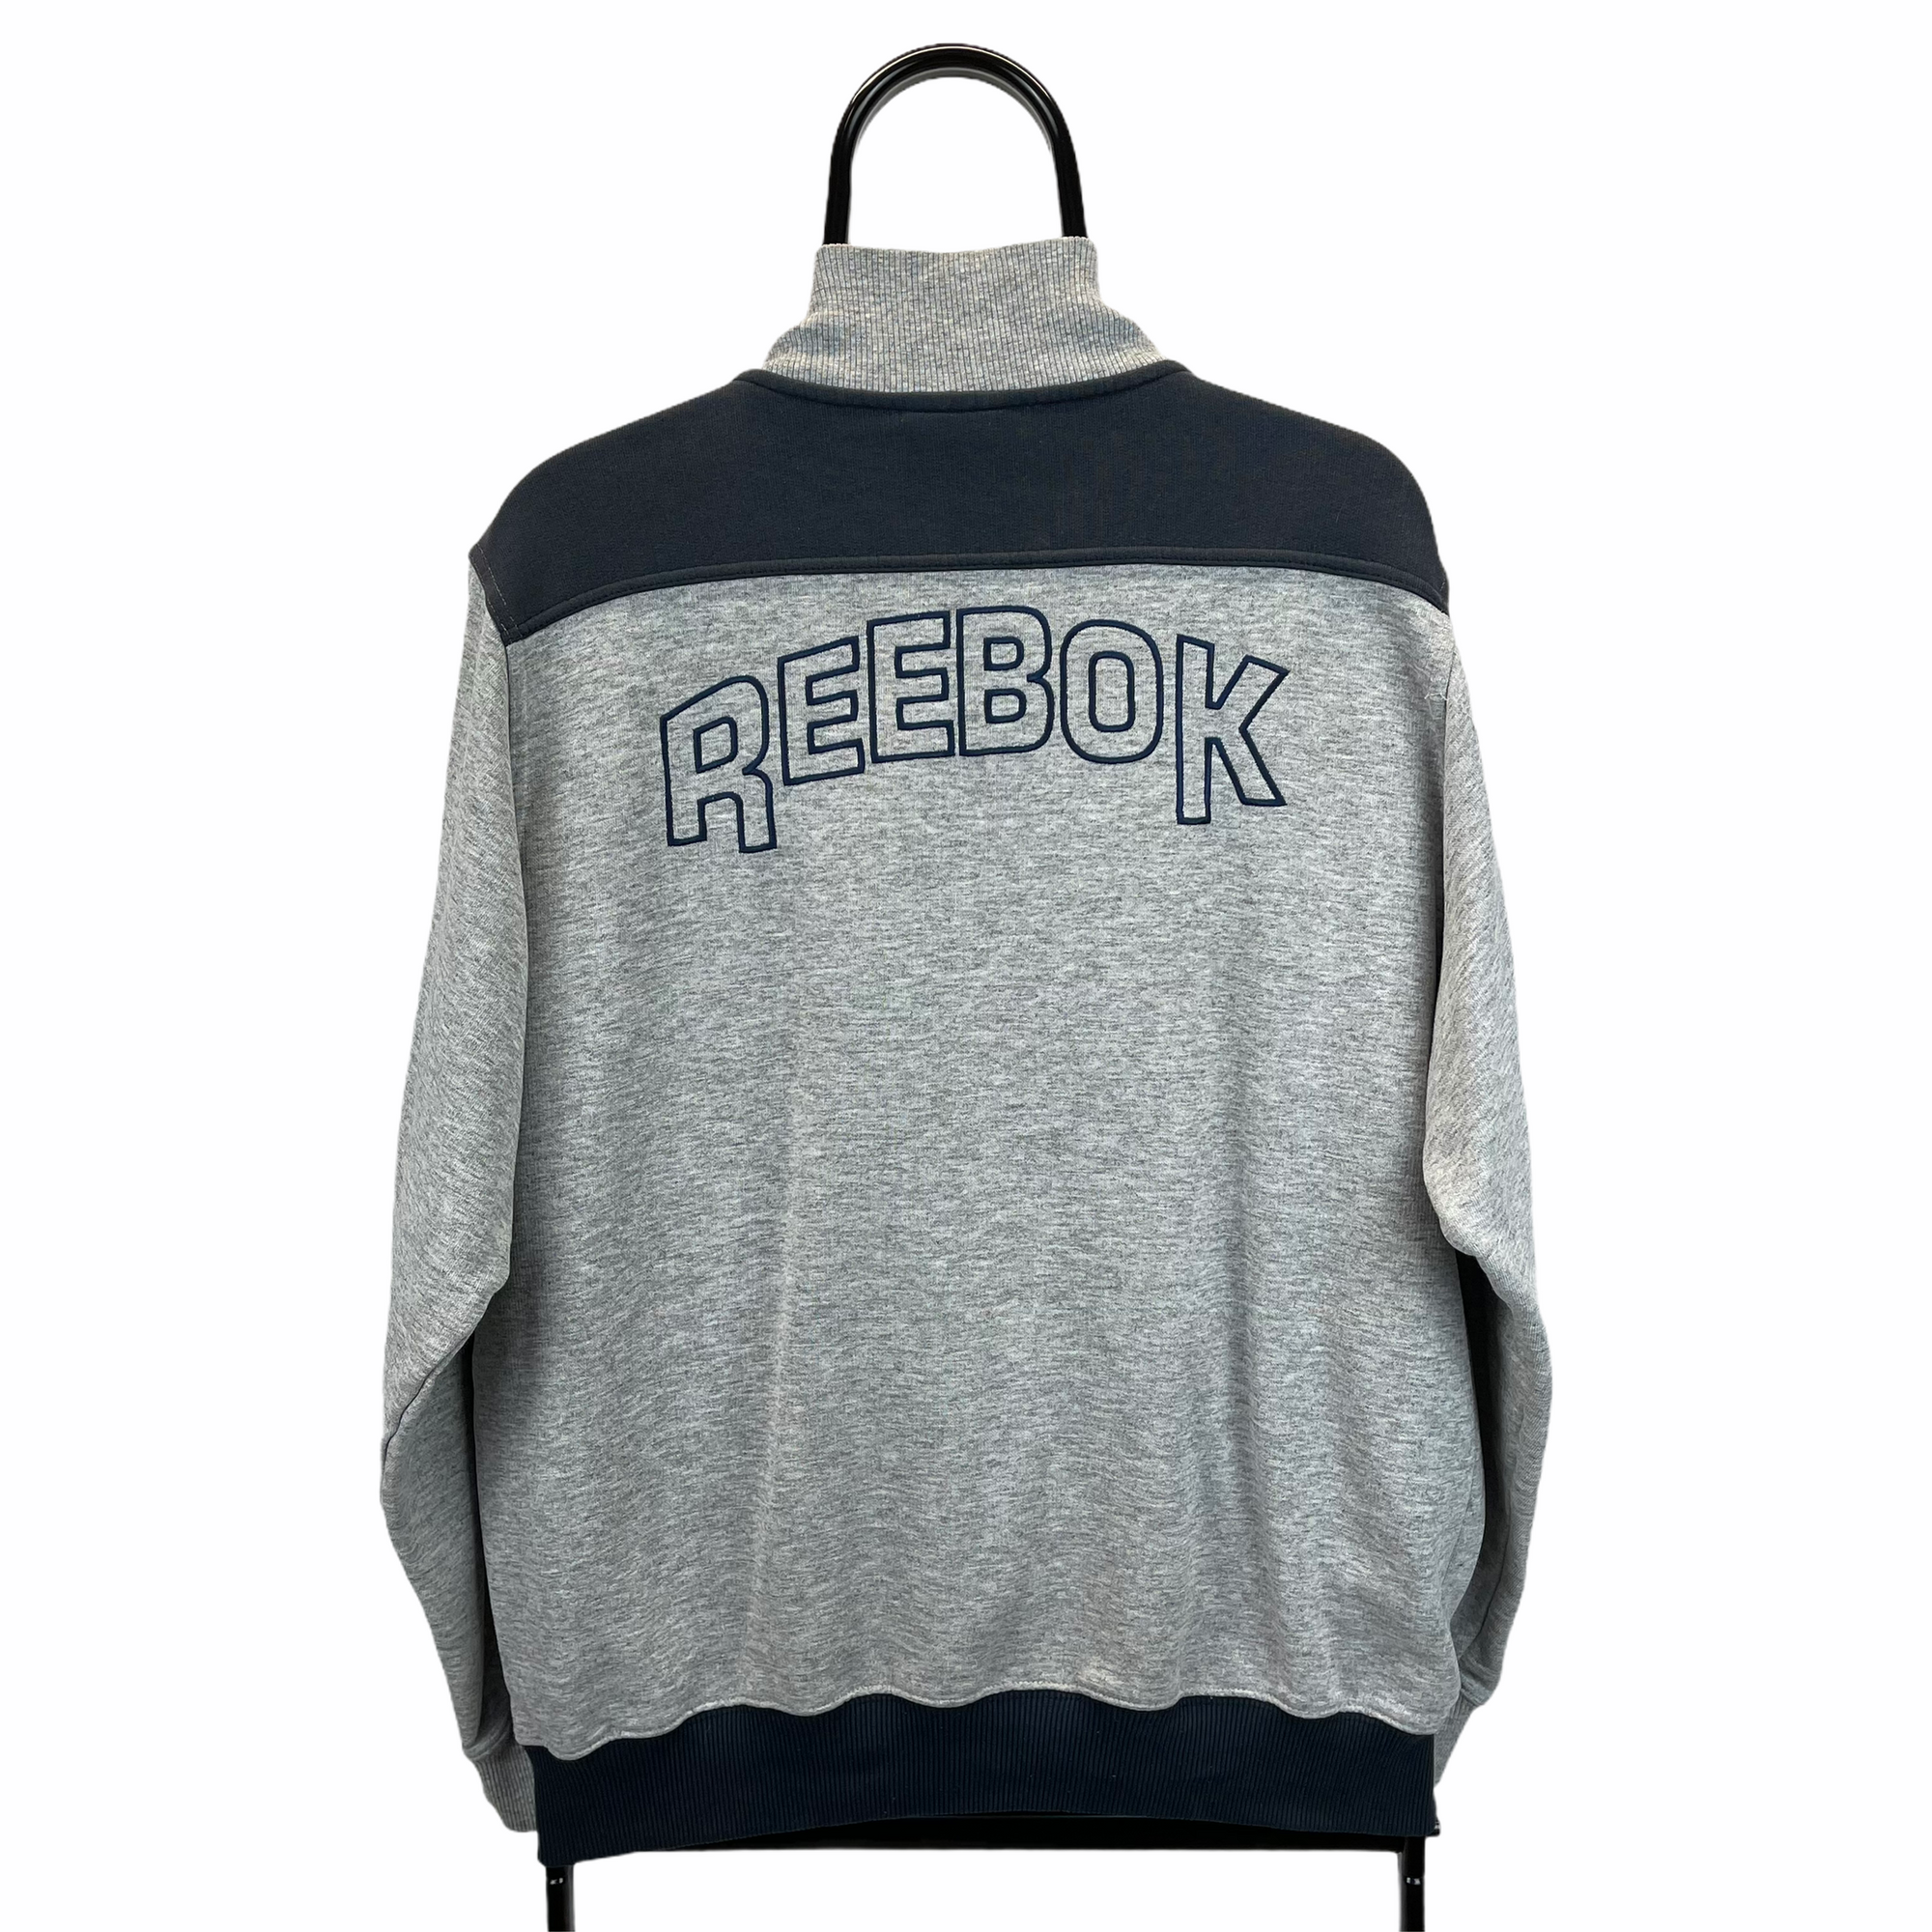 Vintage Reebok Spellout Zip Up Sweatshirt in Grey & Navy - Men's Medium/Women's Large